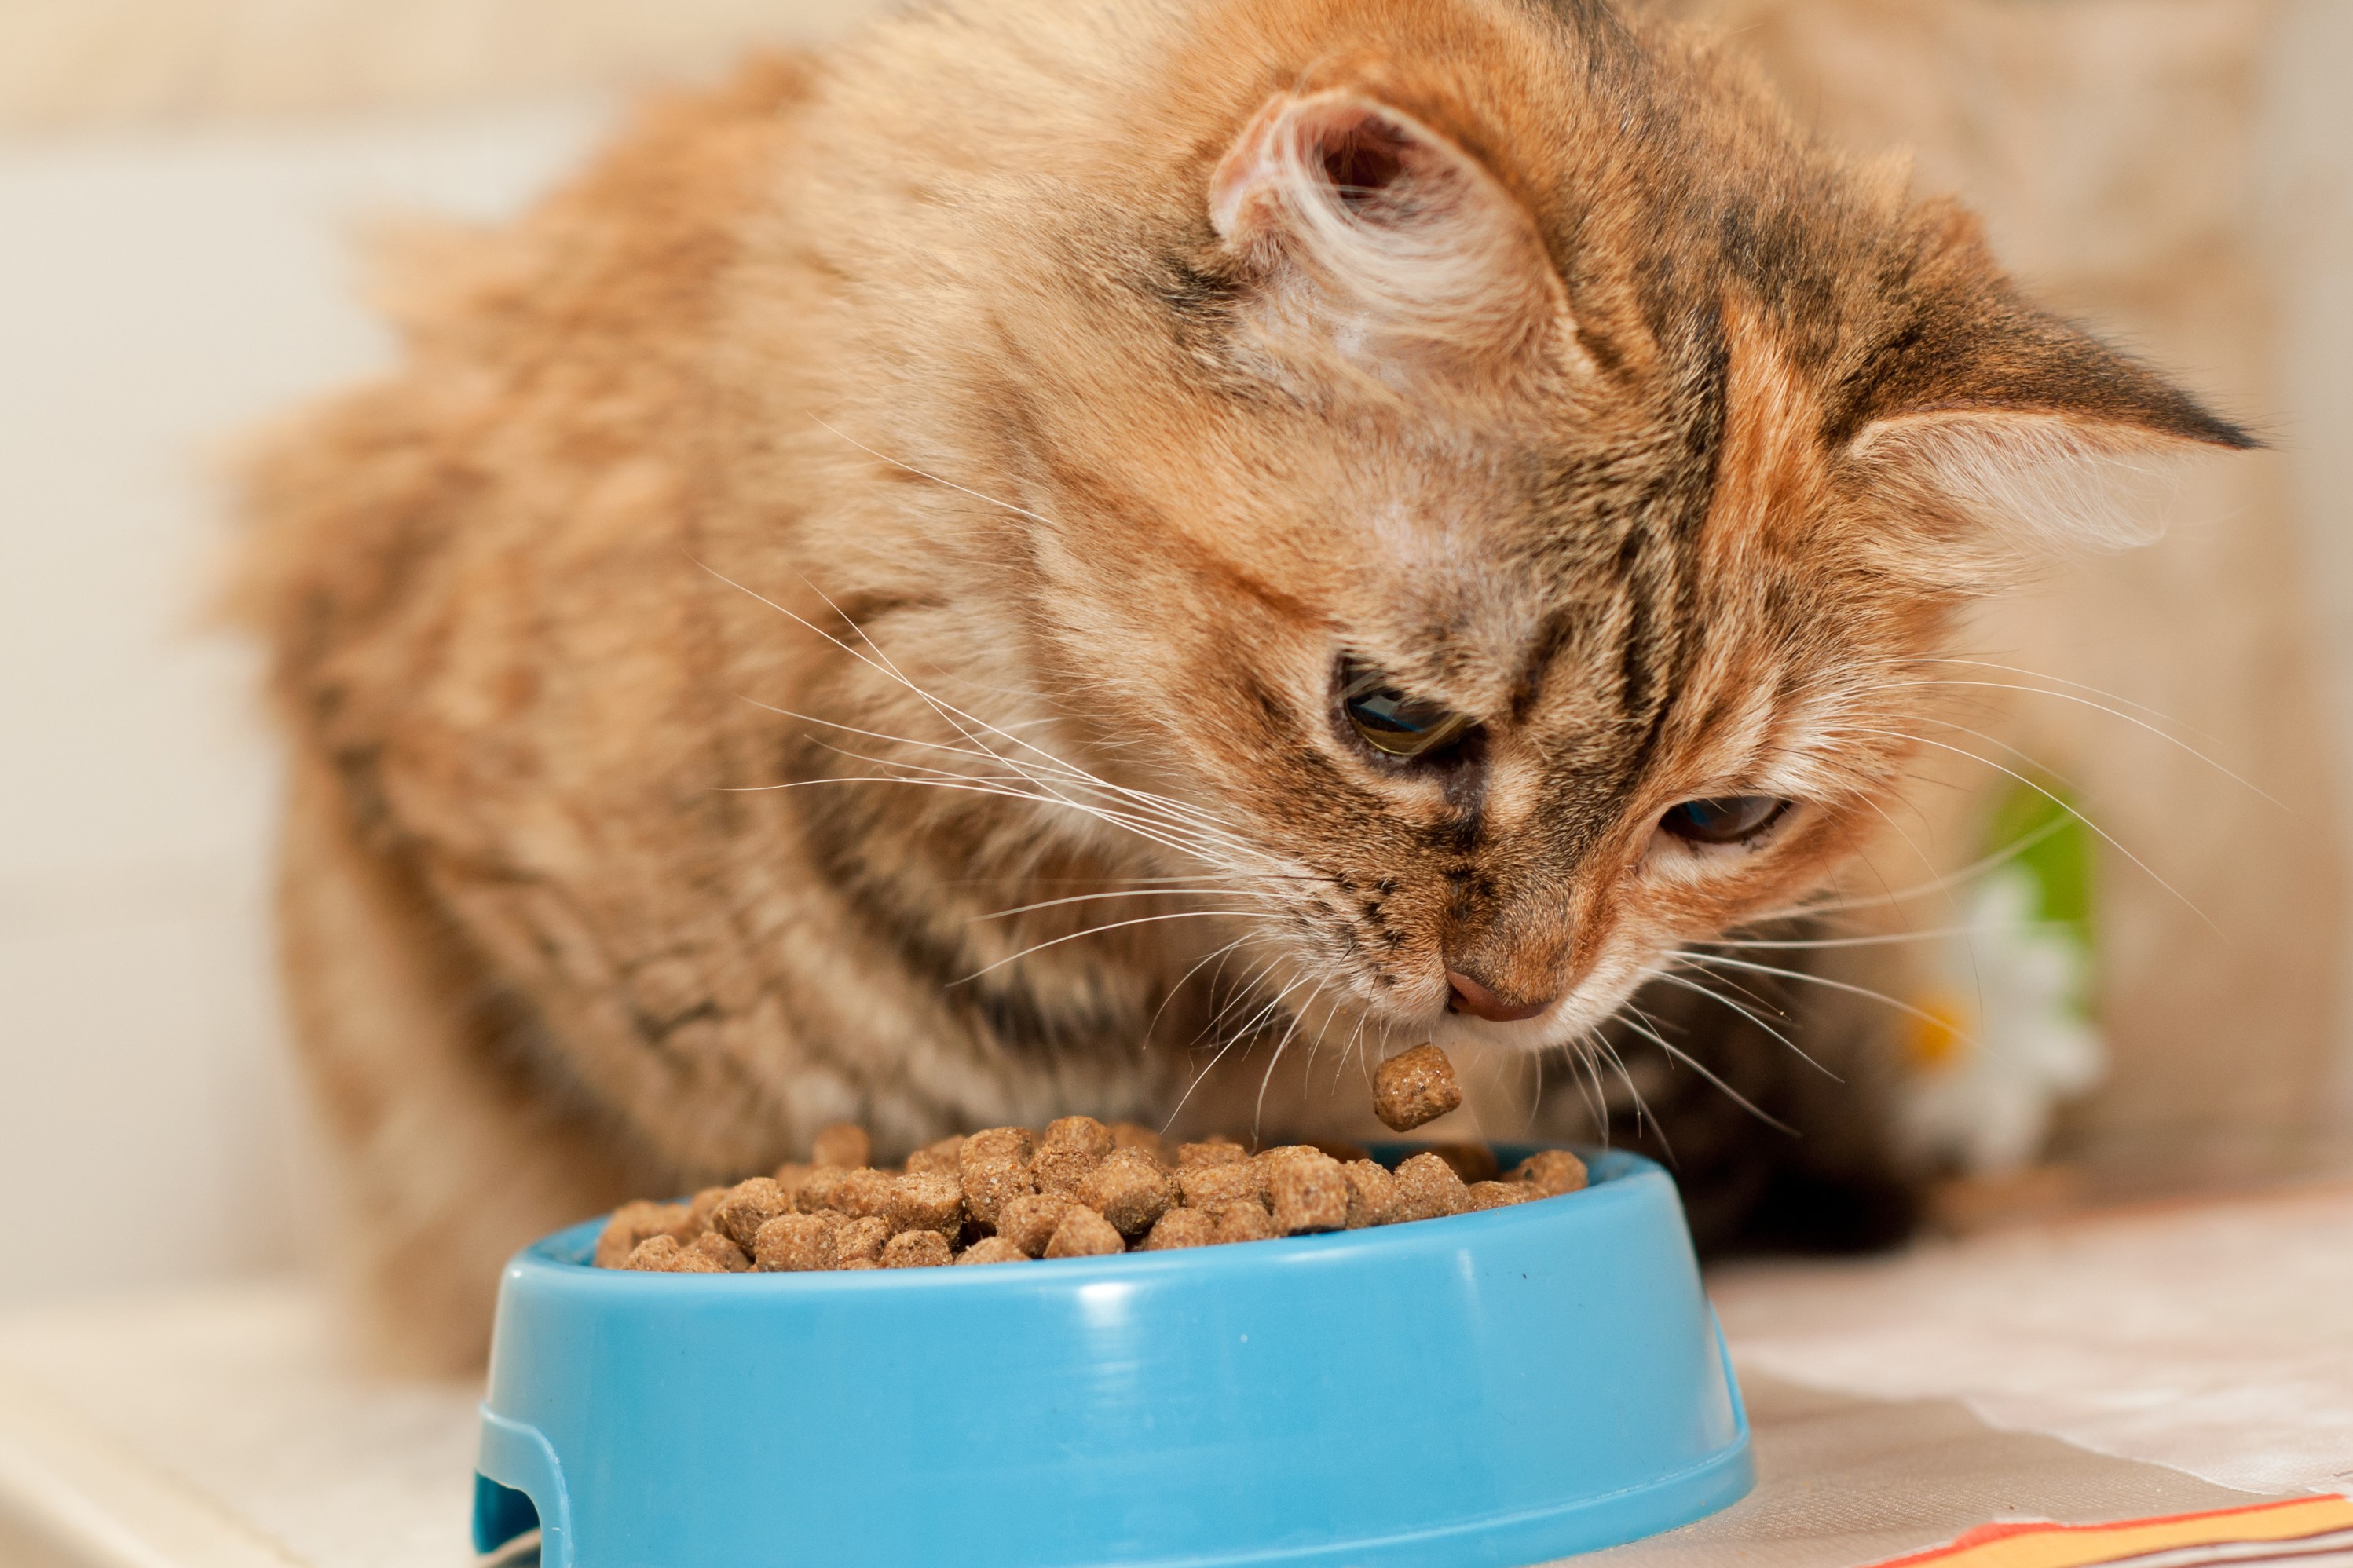 Tabby cat eats kibble in a bowl